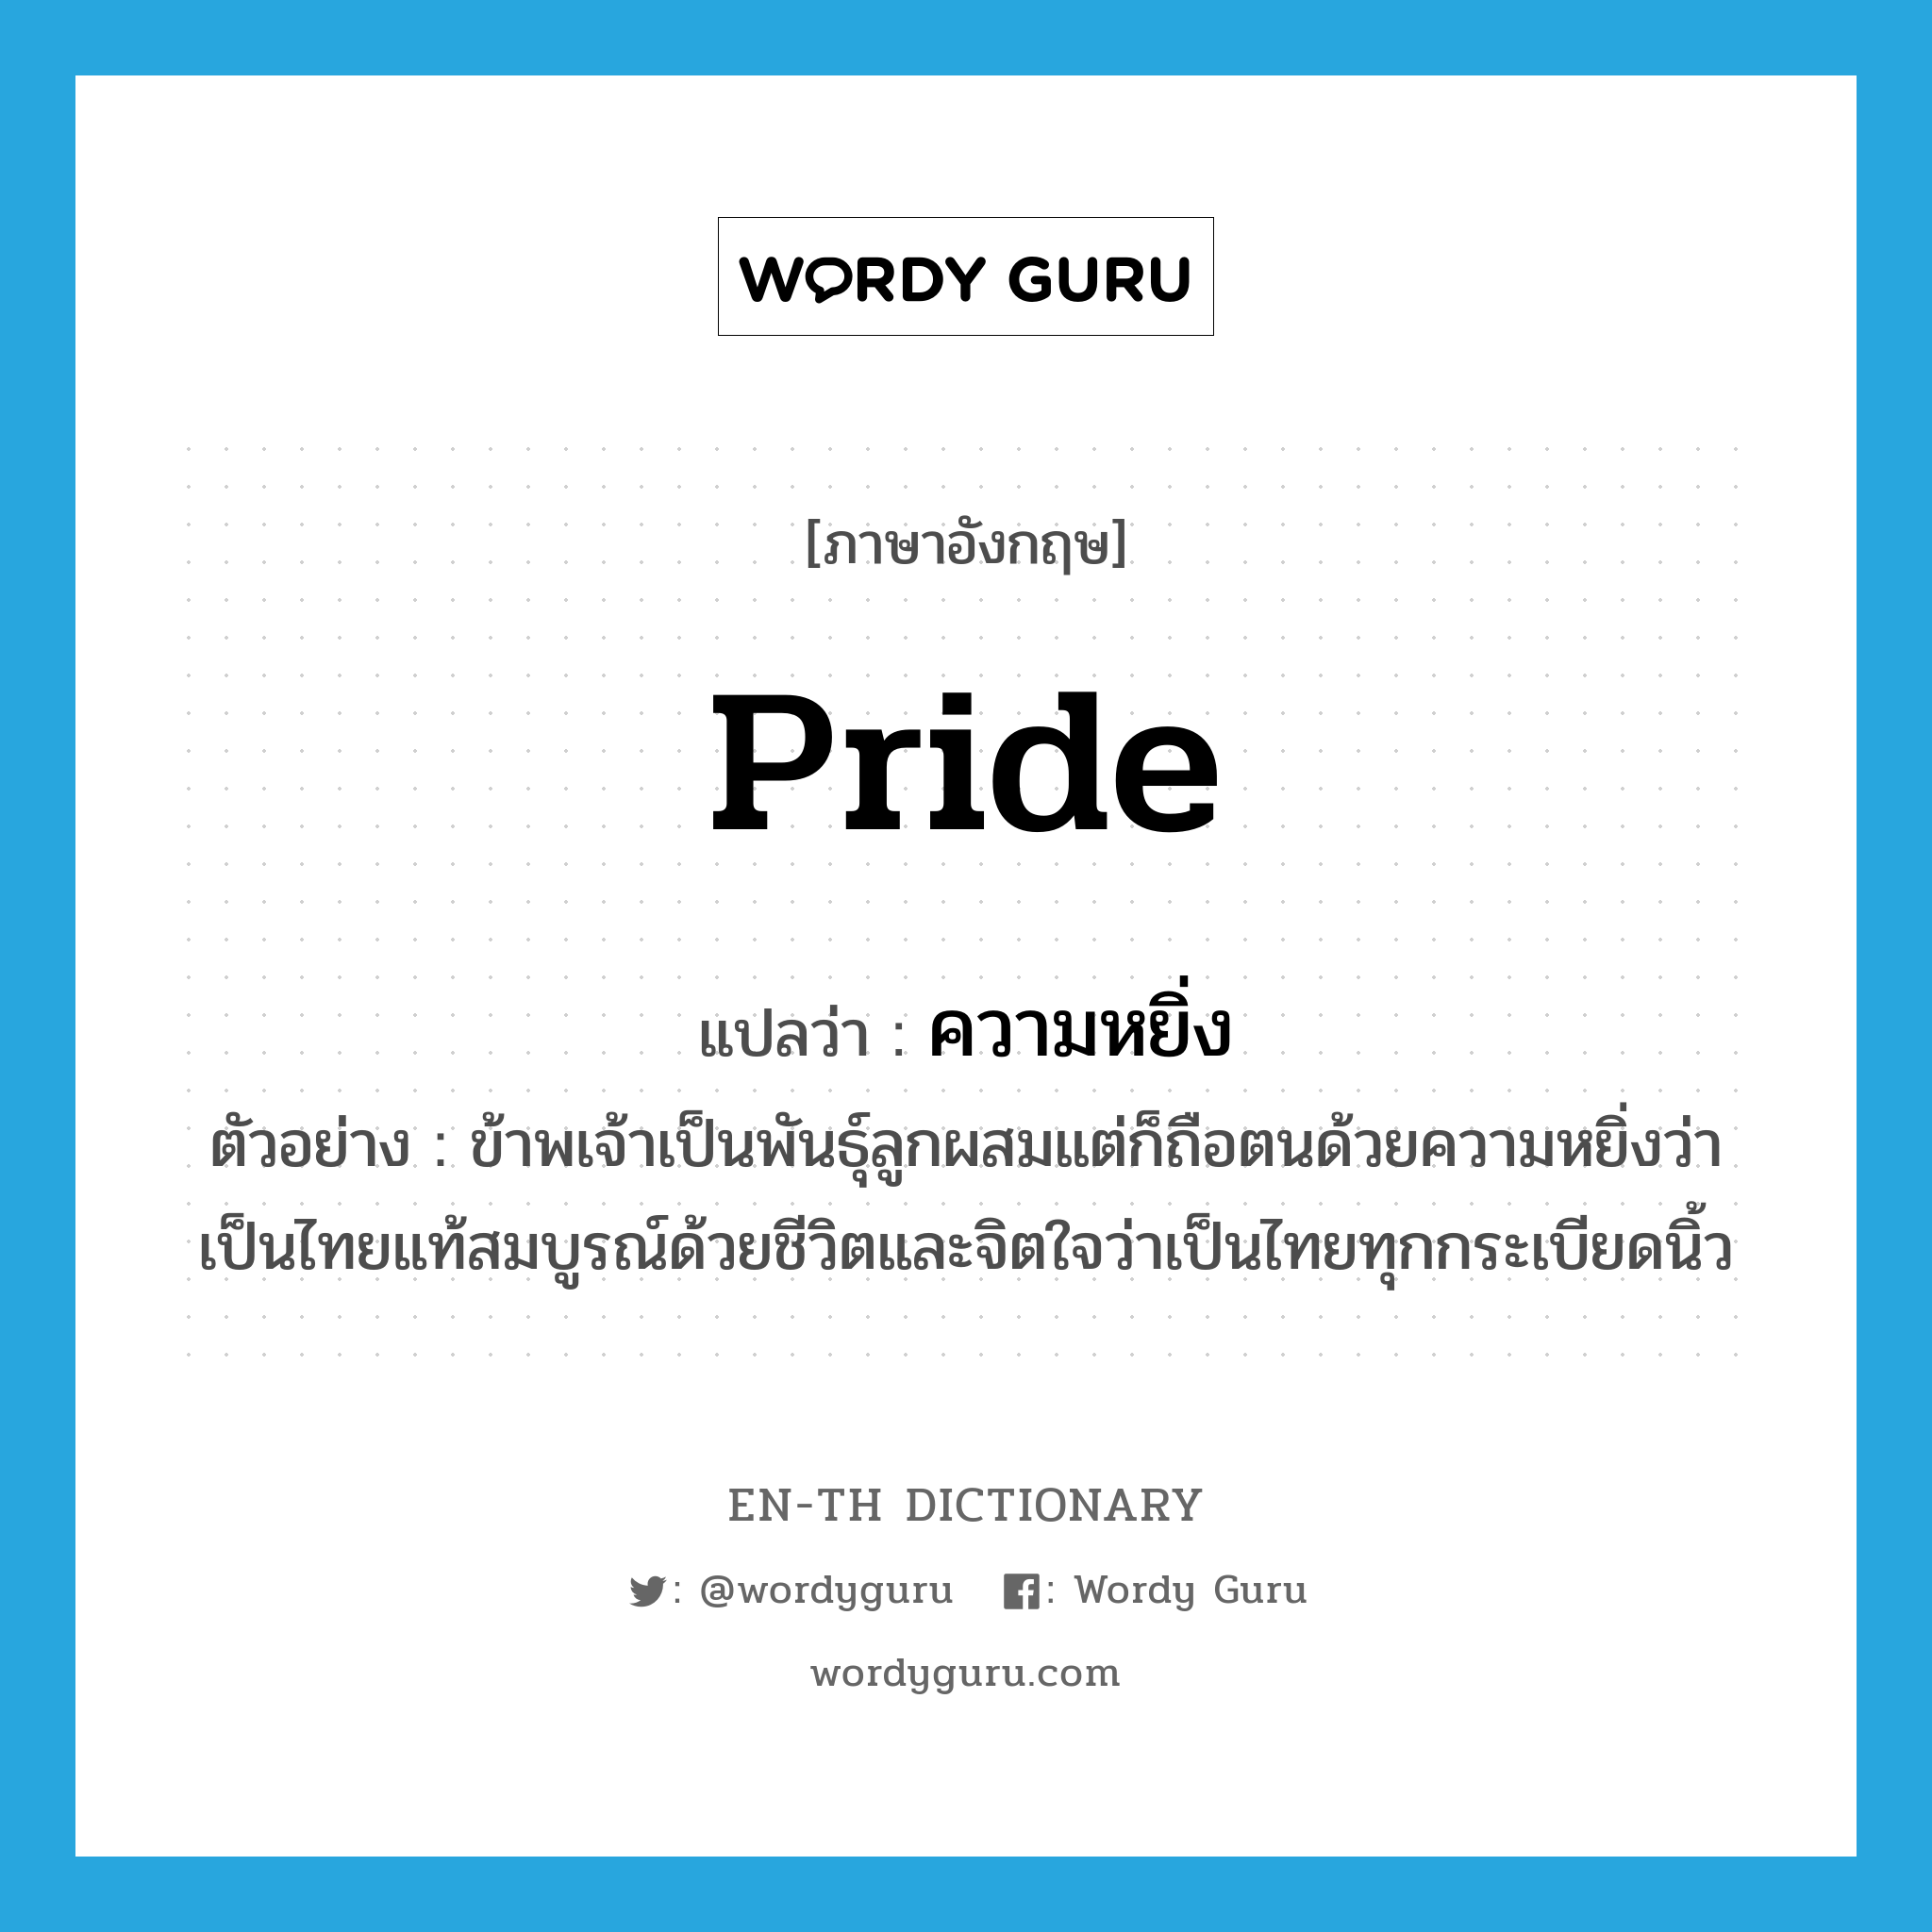 pride แปลว่า?, คำศัพท์ภาษาอังกฤษ pride แปลว่า ความหยิ่ง ประเภท N ตัวอย่าง ข้าพเจ้าเป็นพันธุ์ลูกผสมแต่ก็ถือตนด้วยความหยิ่งว่าเป็นไทยแท้สมบูรณ์ด้วยชีวิตและจิตใจว่าเป็นไทยทุกกระเบียดนิ้ว หมวด N